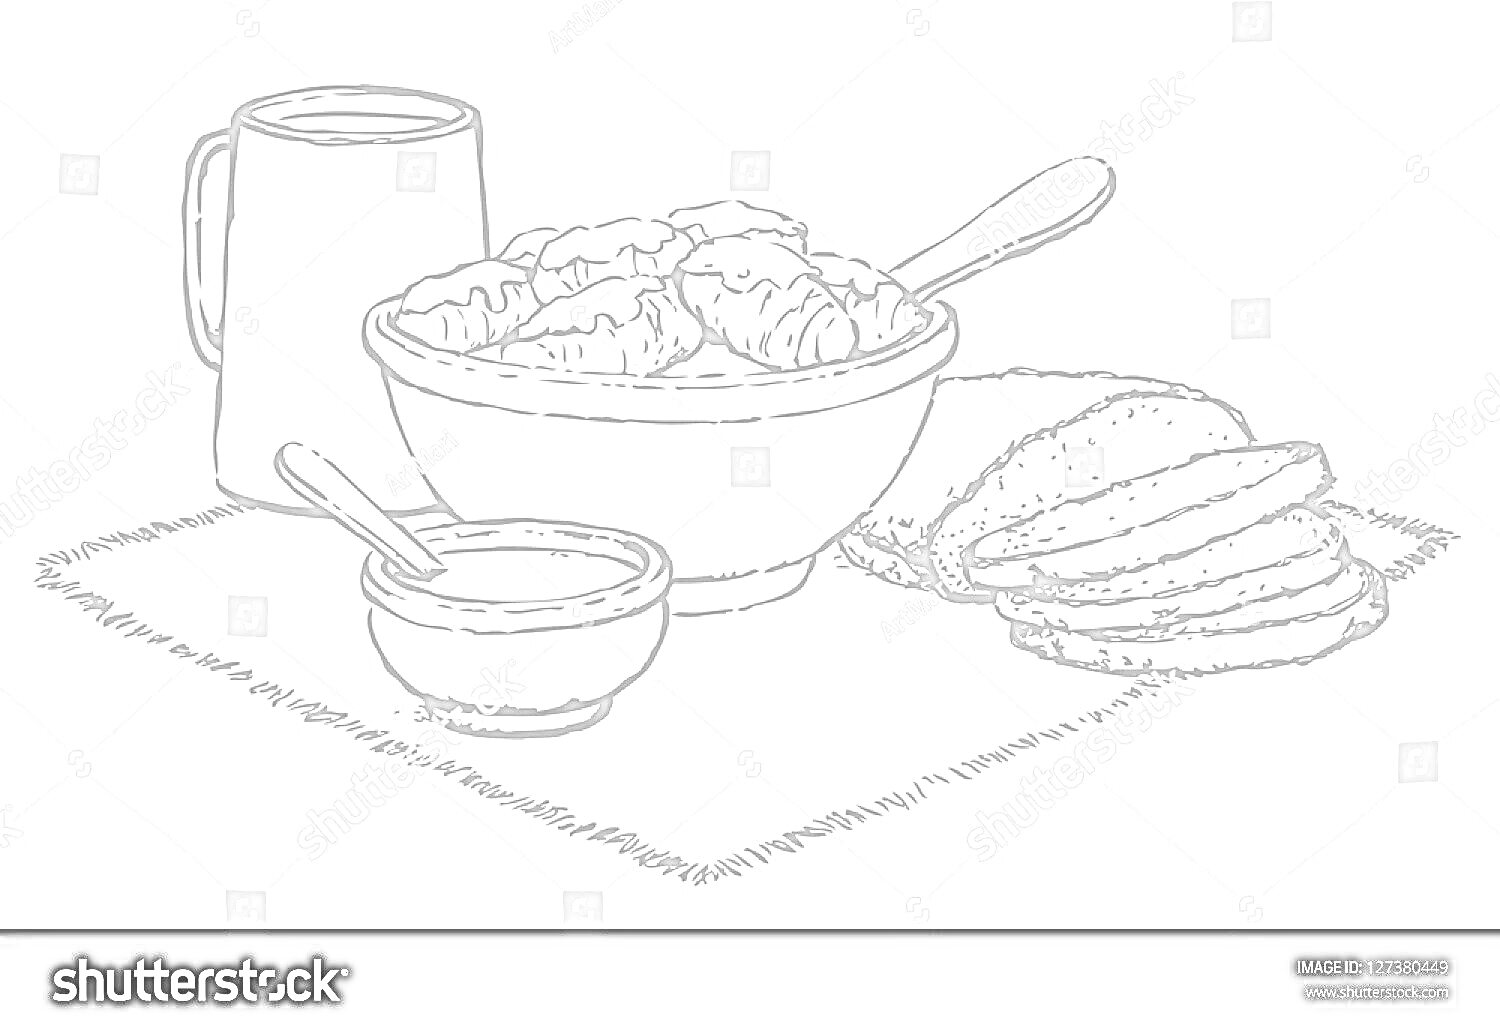 На раскраске изображено: Соус, Нарезанный хлеб, Кувшин, Полотенце, Столовые приборы